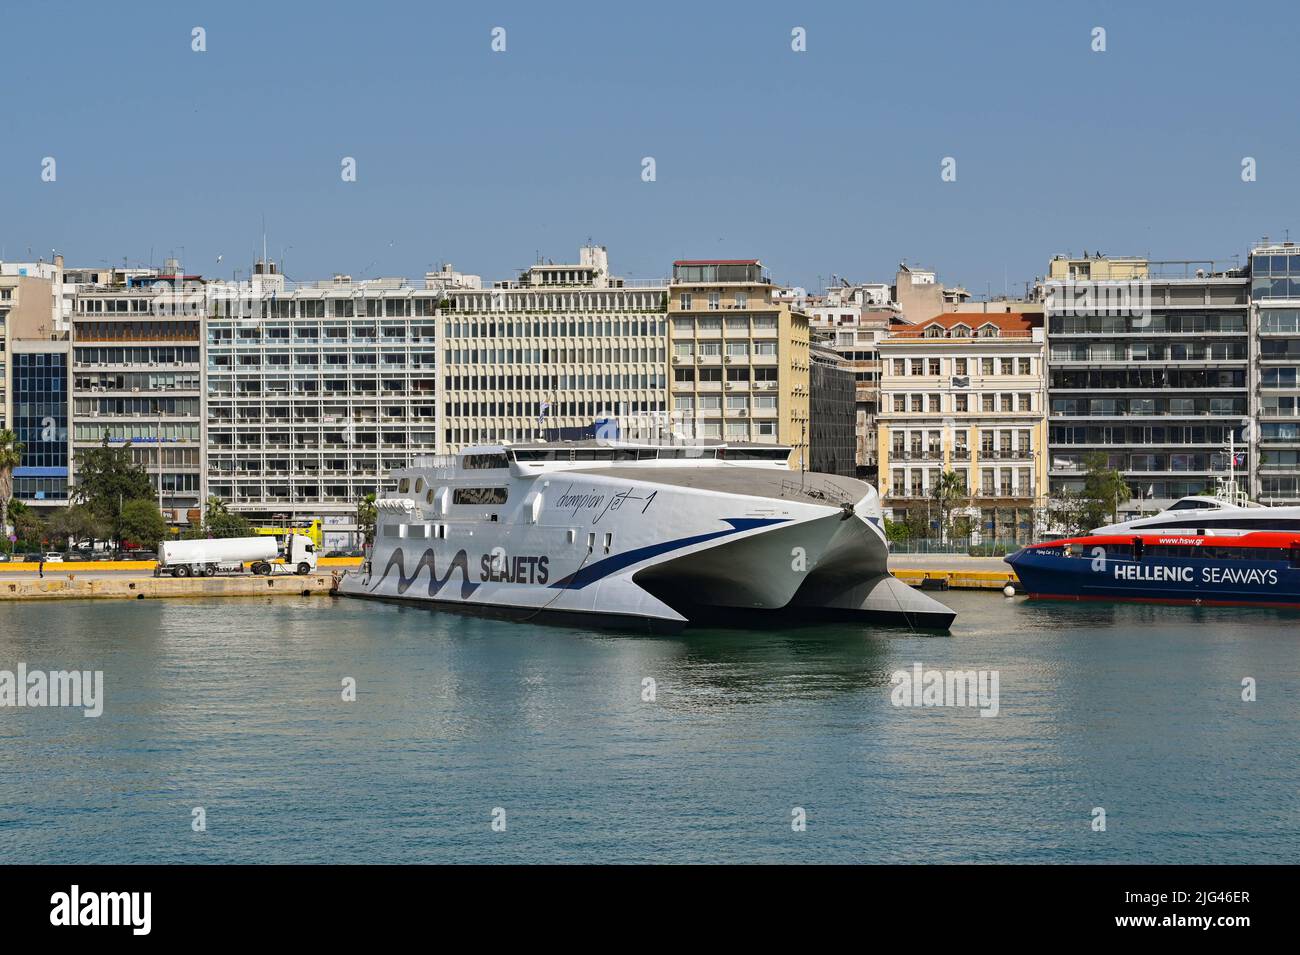 Athen, Griechenland - 2022. Mai: Doppelrumpf-Hochgeschwindigkeitsfähre Champion Jet liegt im Hafen von Piräus, nachdem er von einer der griechischen Inseln aus angekommen ist. Stockfoto